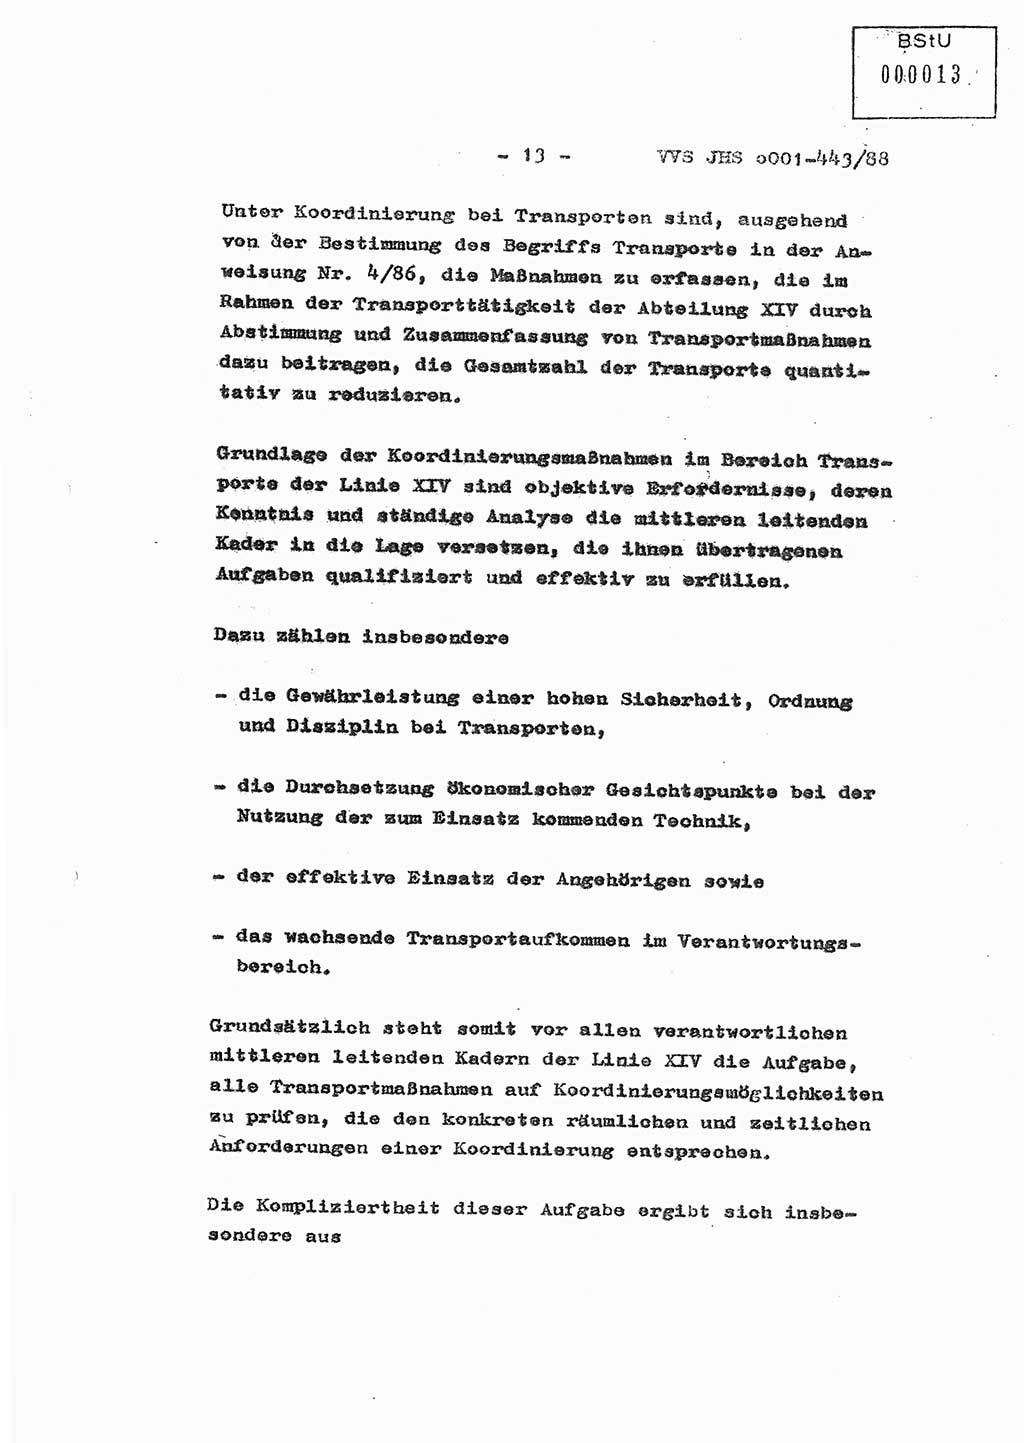 Diplomarbeit Hauptmann Michael Rast (Abt. ⅩⅣ), Major Bernd Rahaus (Abt. ⅩⅣ), Ministerium für Staatssicherheit (MfS) [Deutsche Demokratische Republik (DDR)], Juristische Hochschule (JHS), Vertrauliche Verschlußsache (VVS) o001-443/88, Potsdam 1988, Seite 13 (Dipl.-Arb. MfS DDR JHS VVS o001-443/88 1988, S. 13)